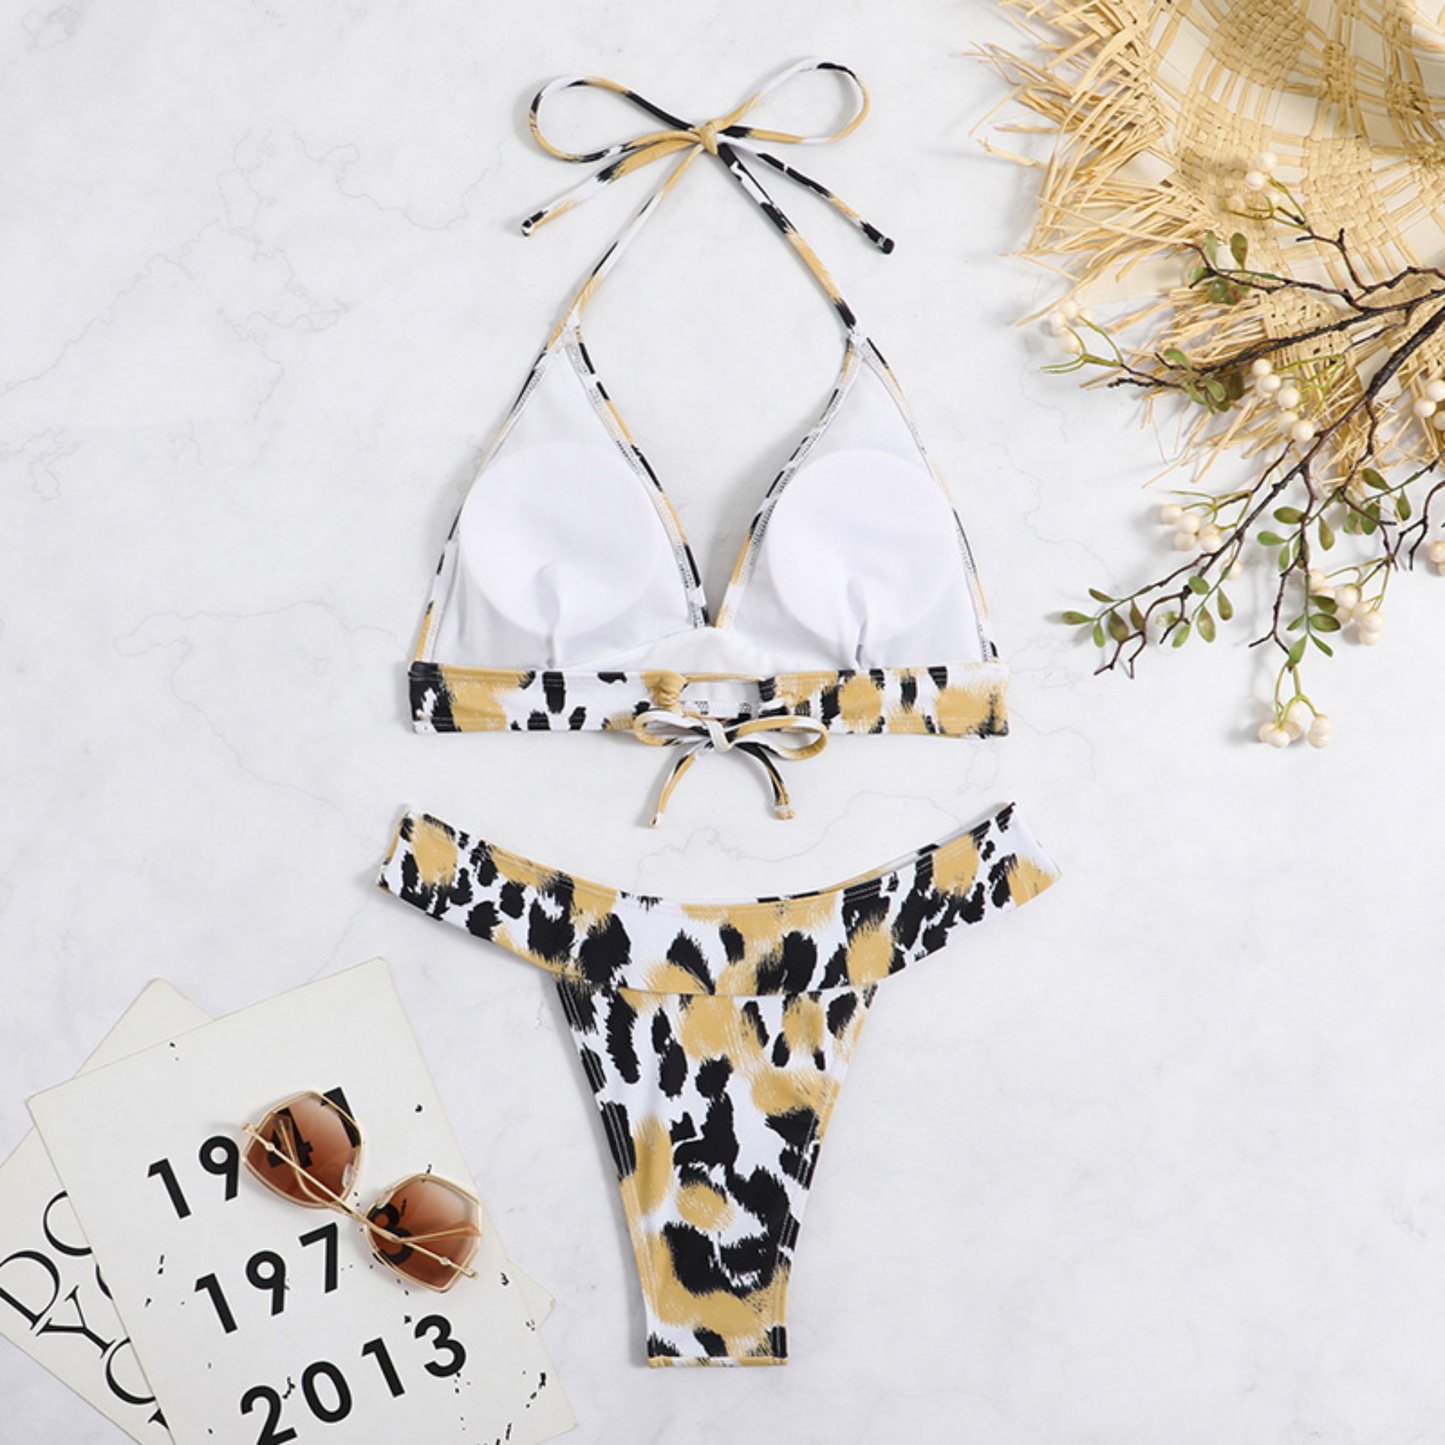 Brooklyn - Leopard Print Two-Piece Bikini set